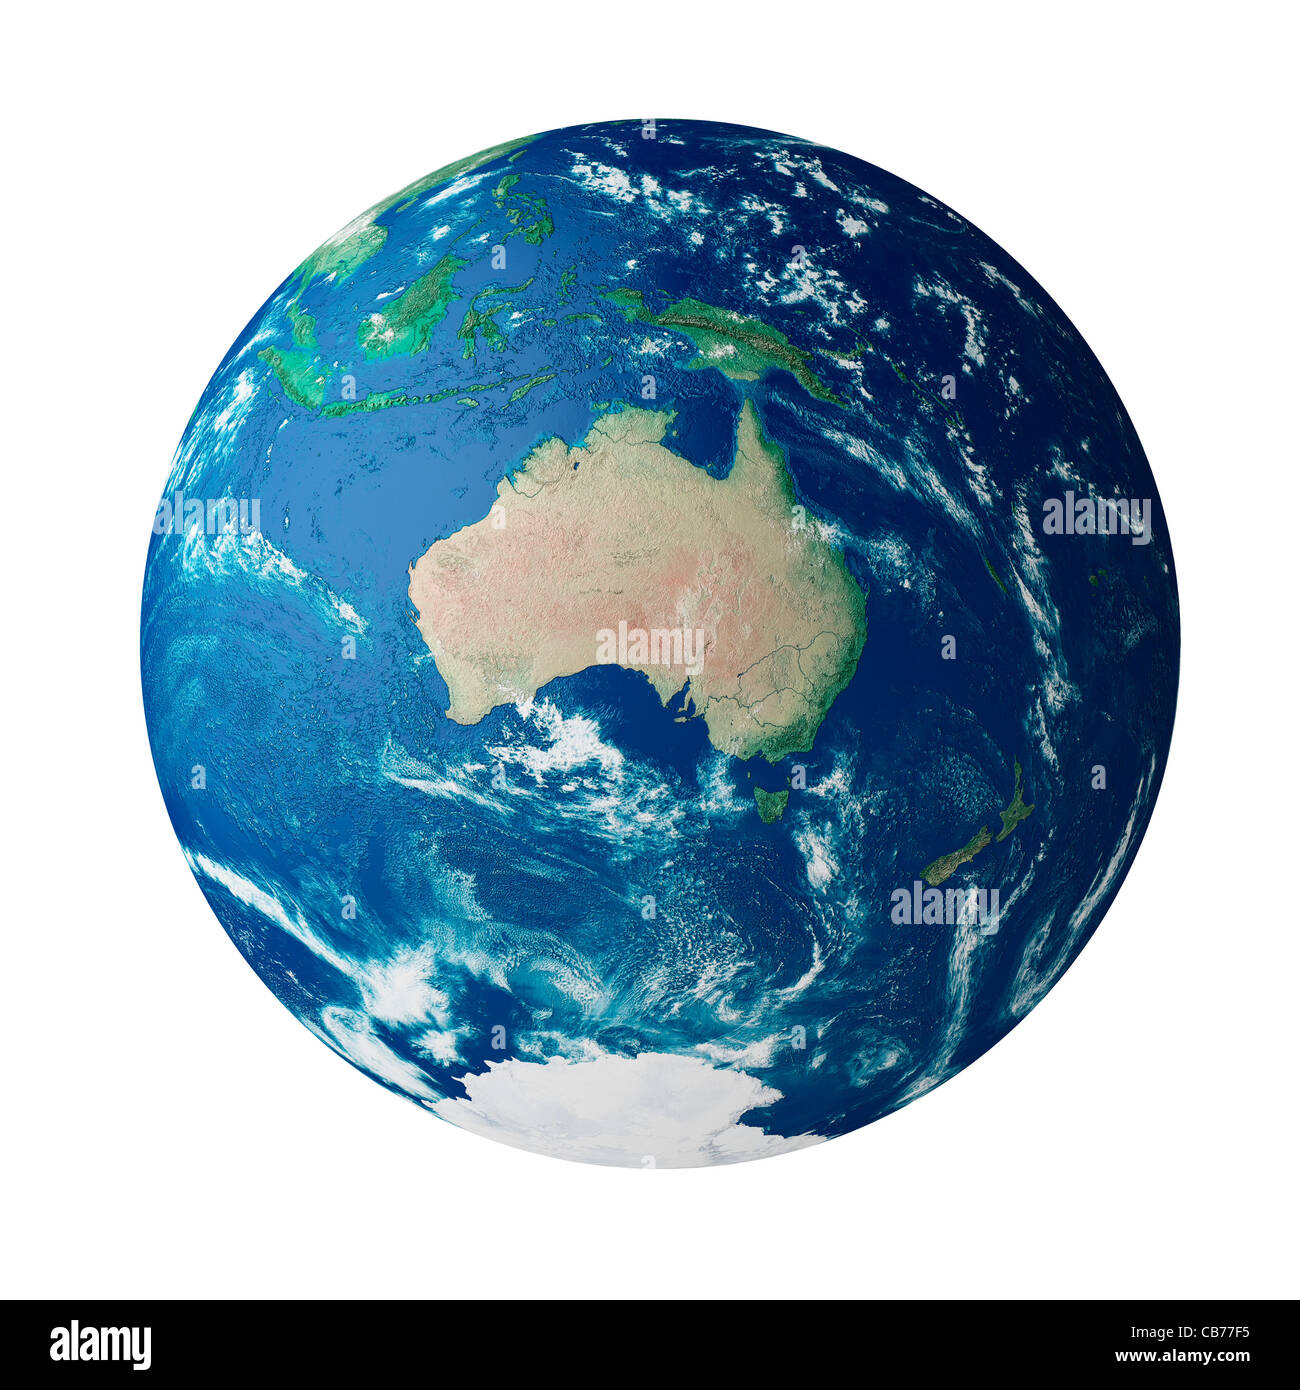 Globe montrant le continent de l'Australie sur la planète terre Banque D'Images